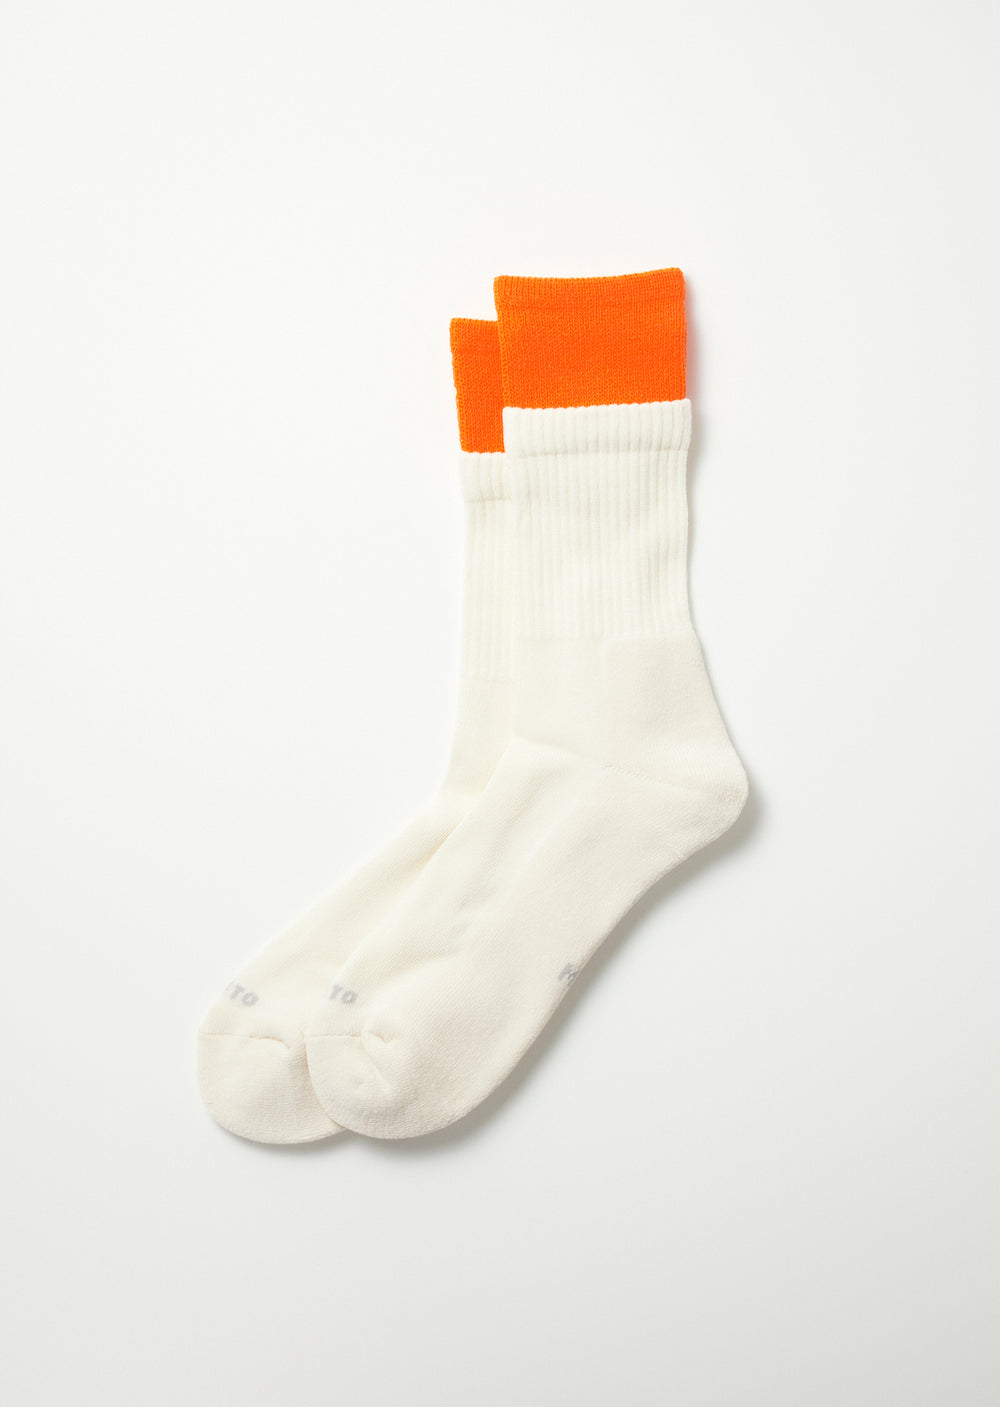 Double Layer Crew Socks - Neon Orange/Off White - R1494